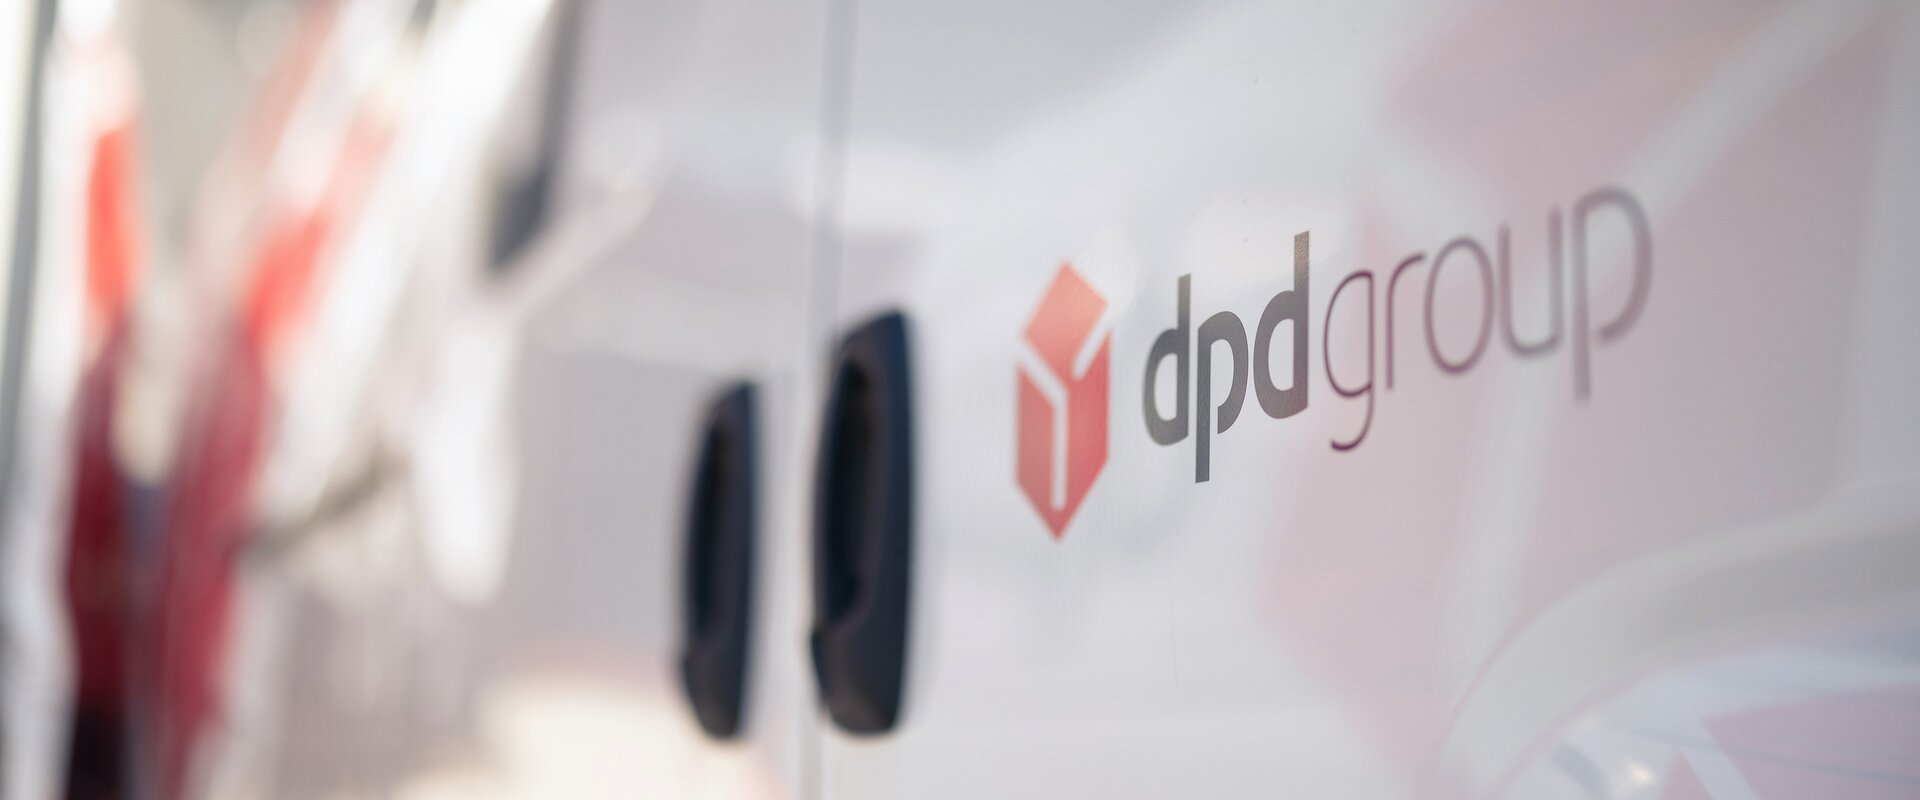 Man sieht das dpdgroup Logo in der Nah-Aufnahme an einer Autotuer